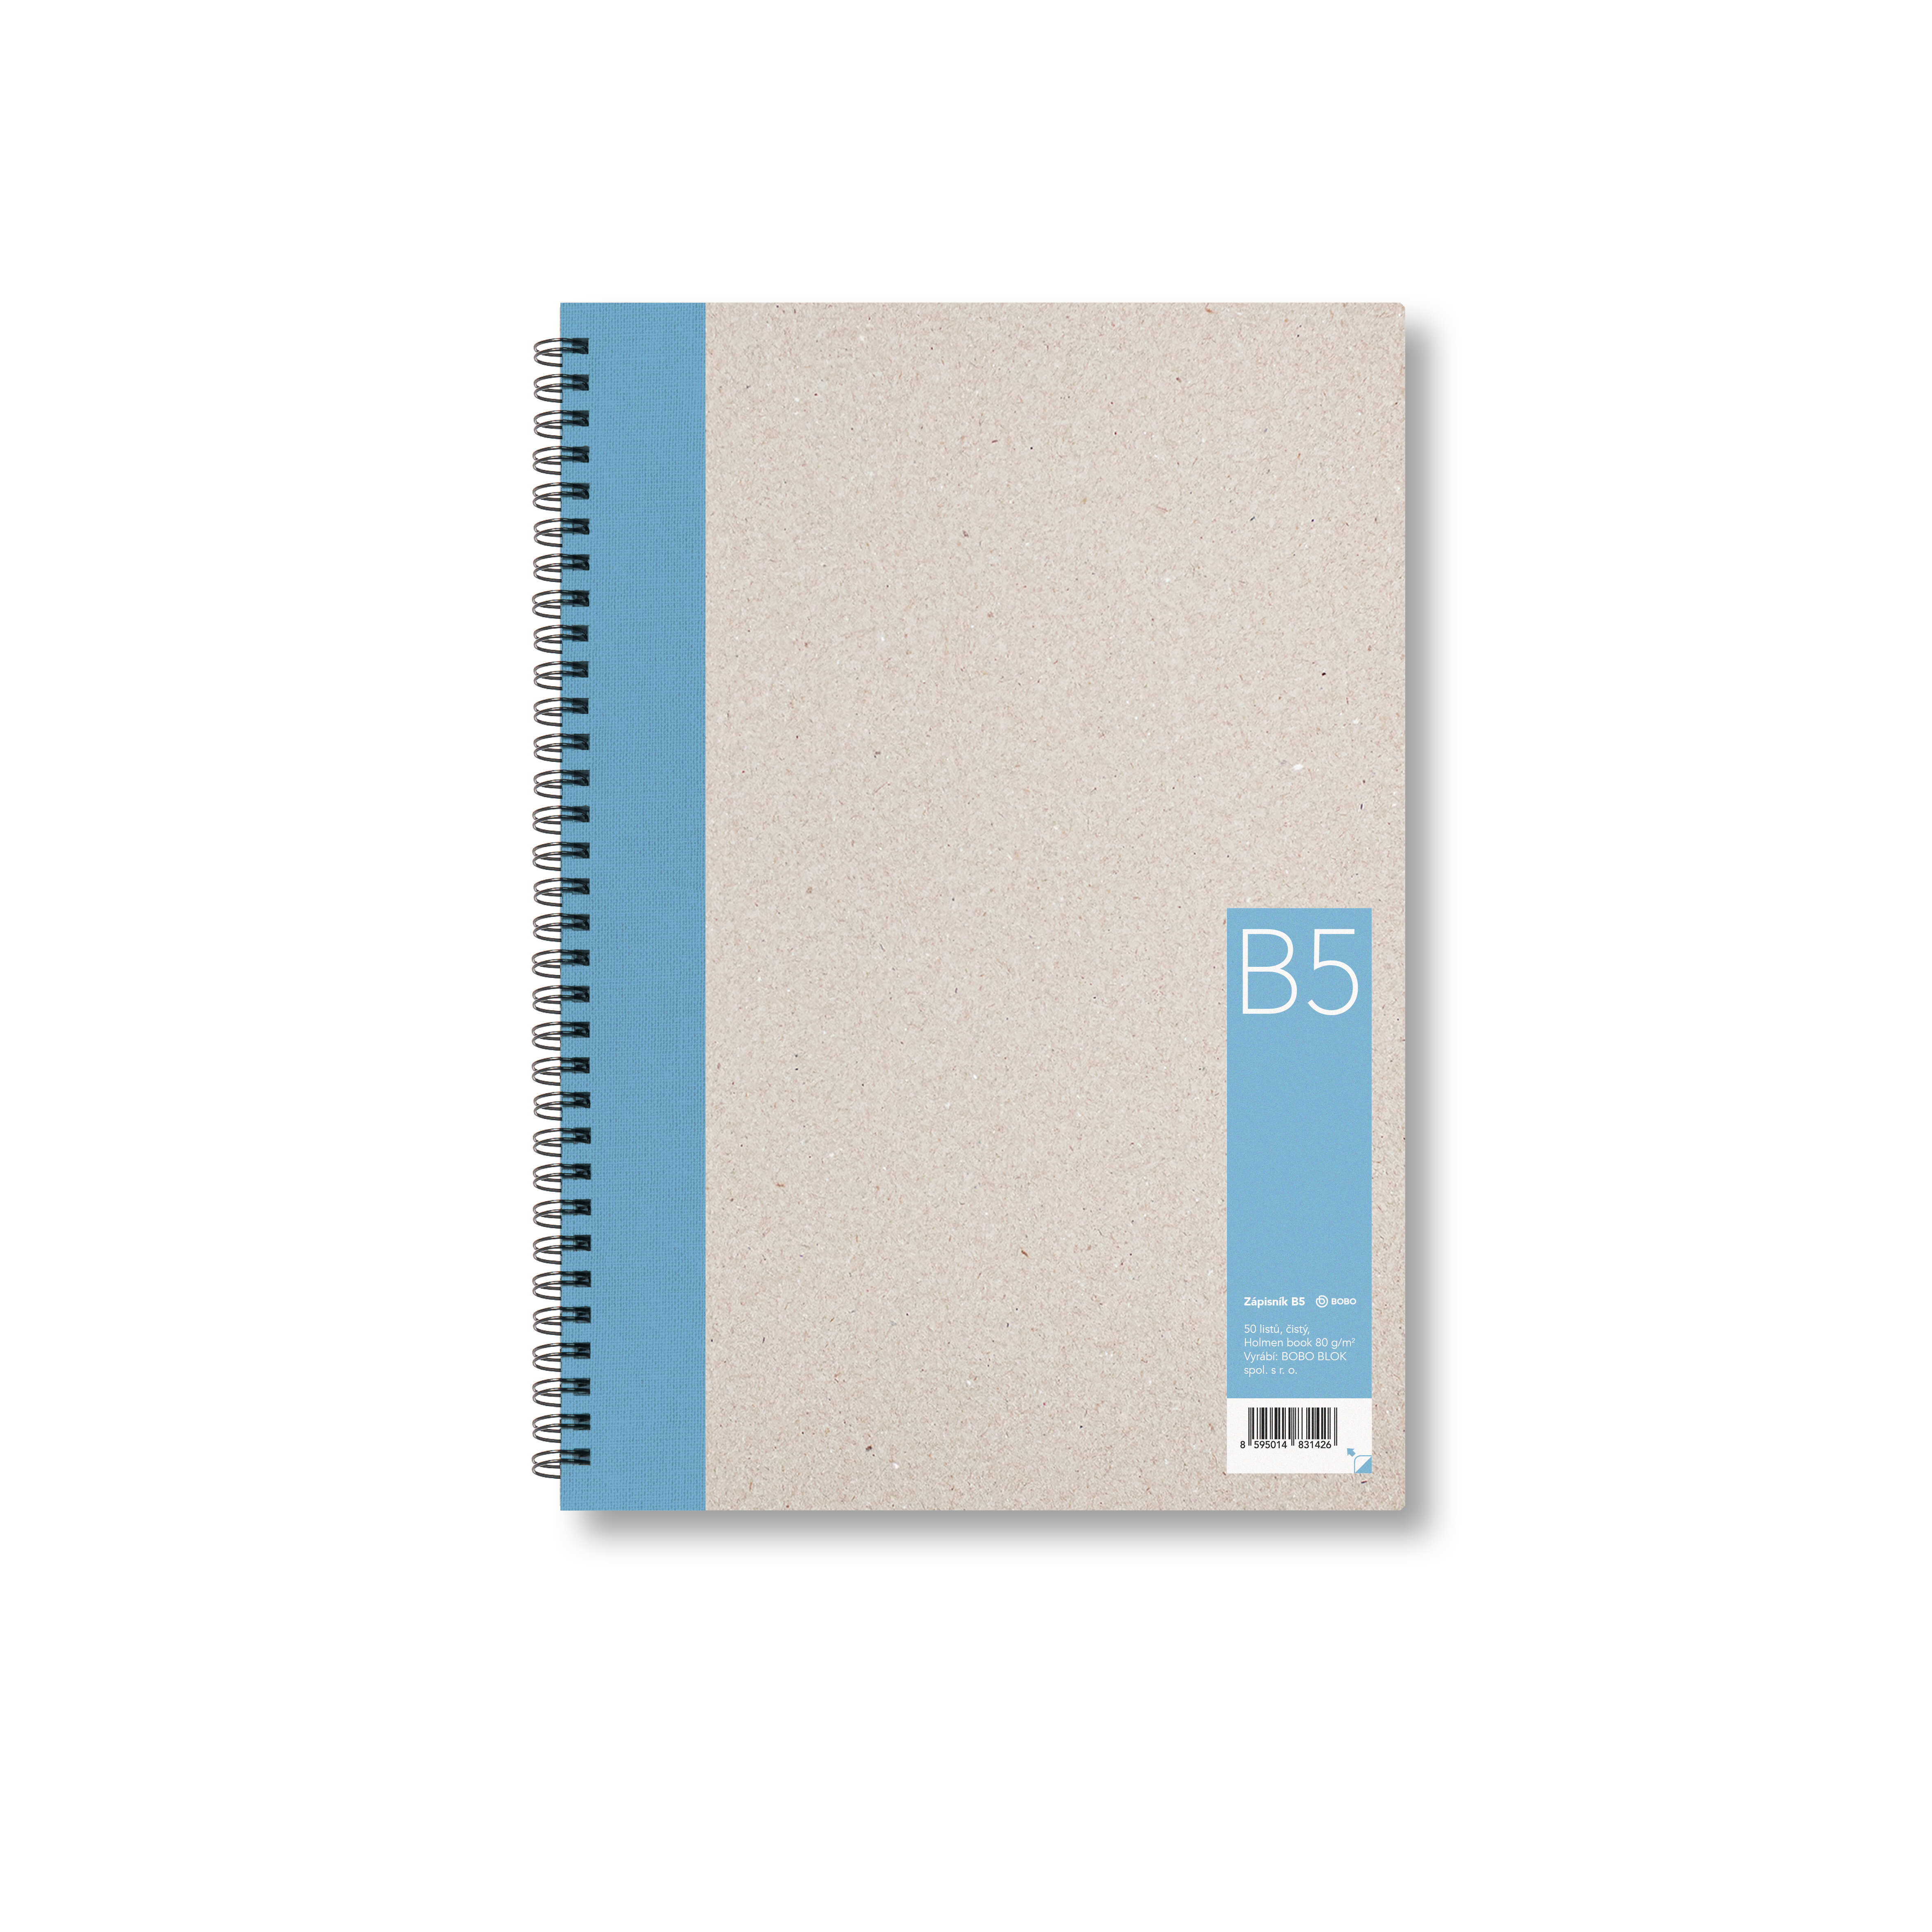 BOBO Zápisník, B5, čistý, světle modrý